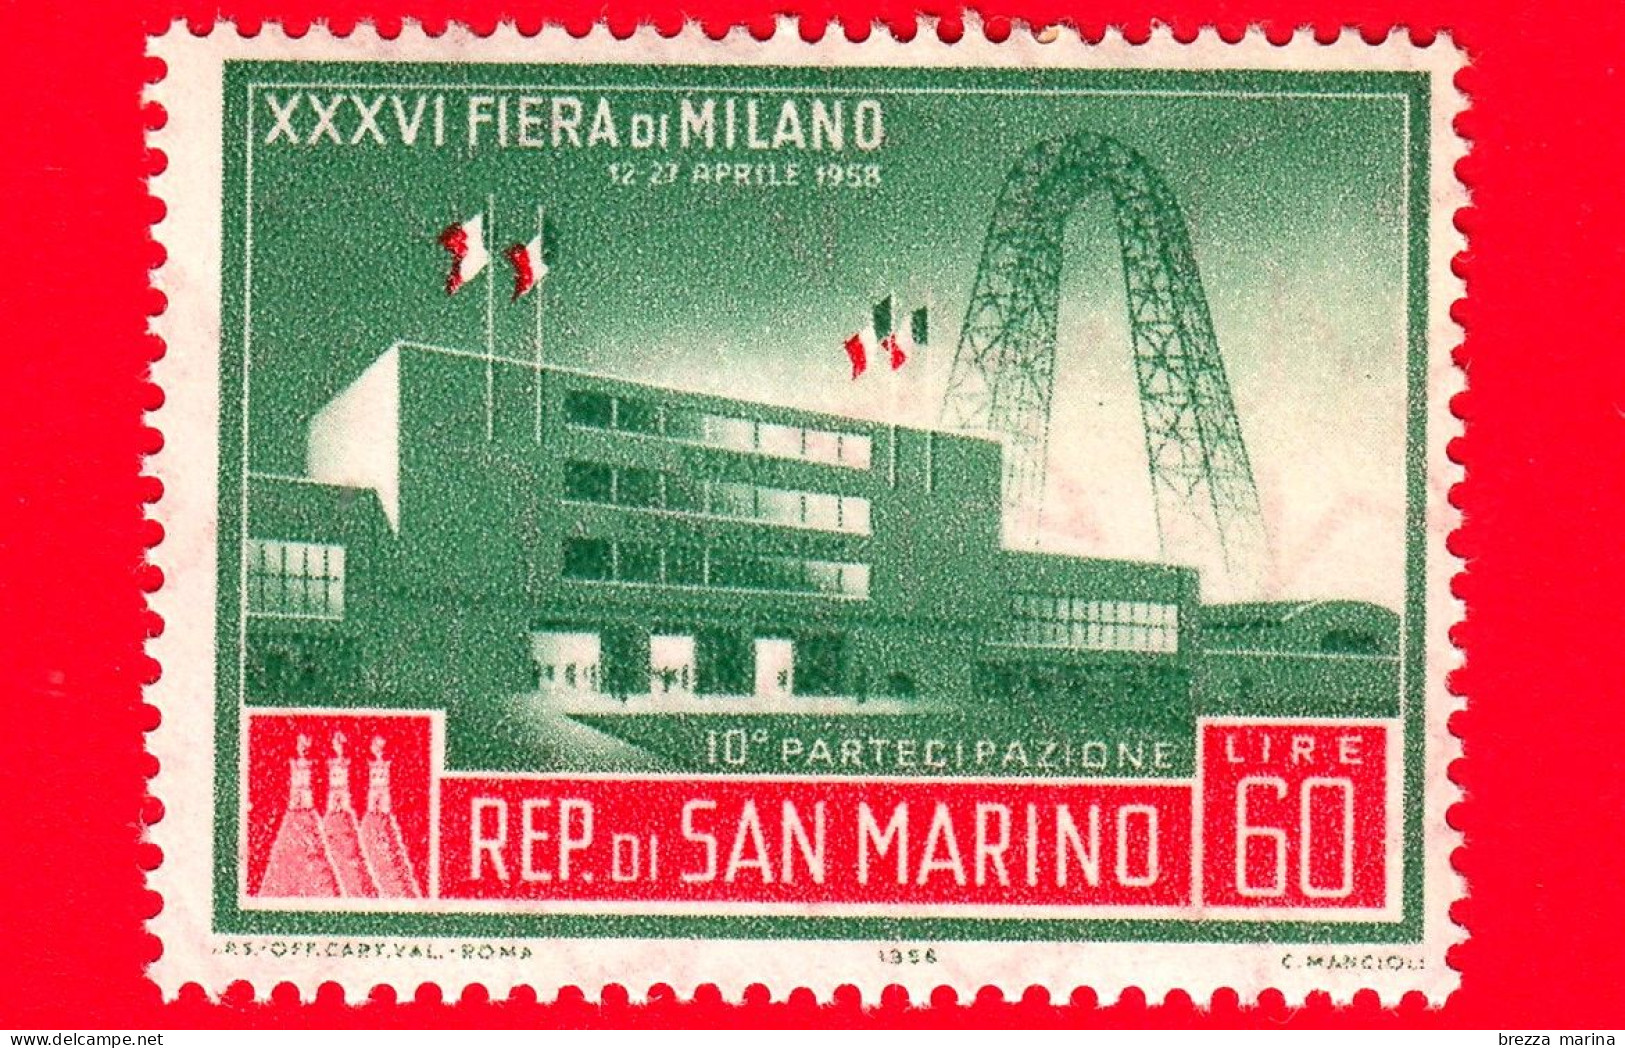 Nuovo - MNH - SAN MARINO - 1958 - XXXVI Fiera Di Milano - 10 Partecipazione - 60 - Nuovi